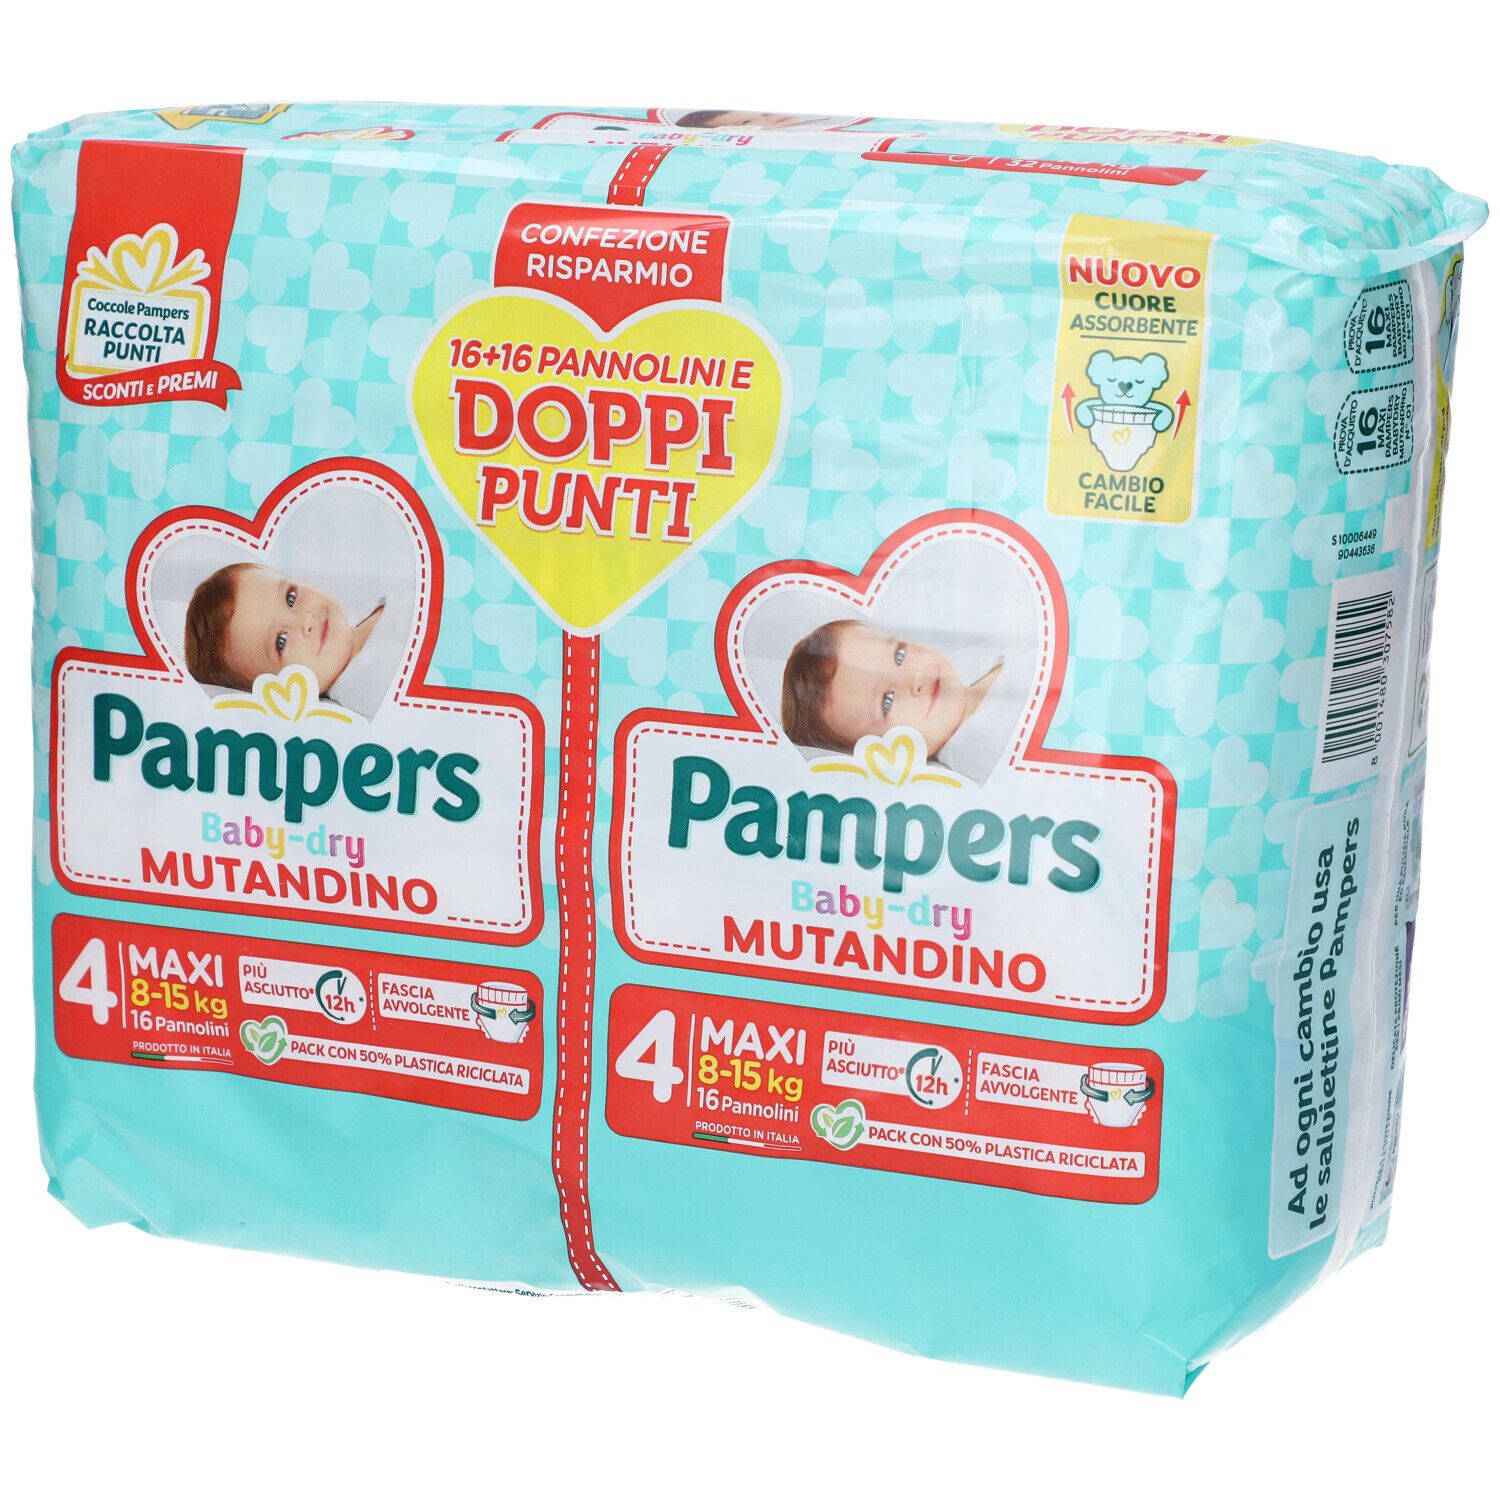 Image of Pampers Baby Dry Mutandino 4 Maxi